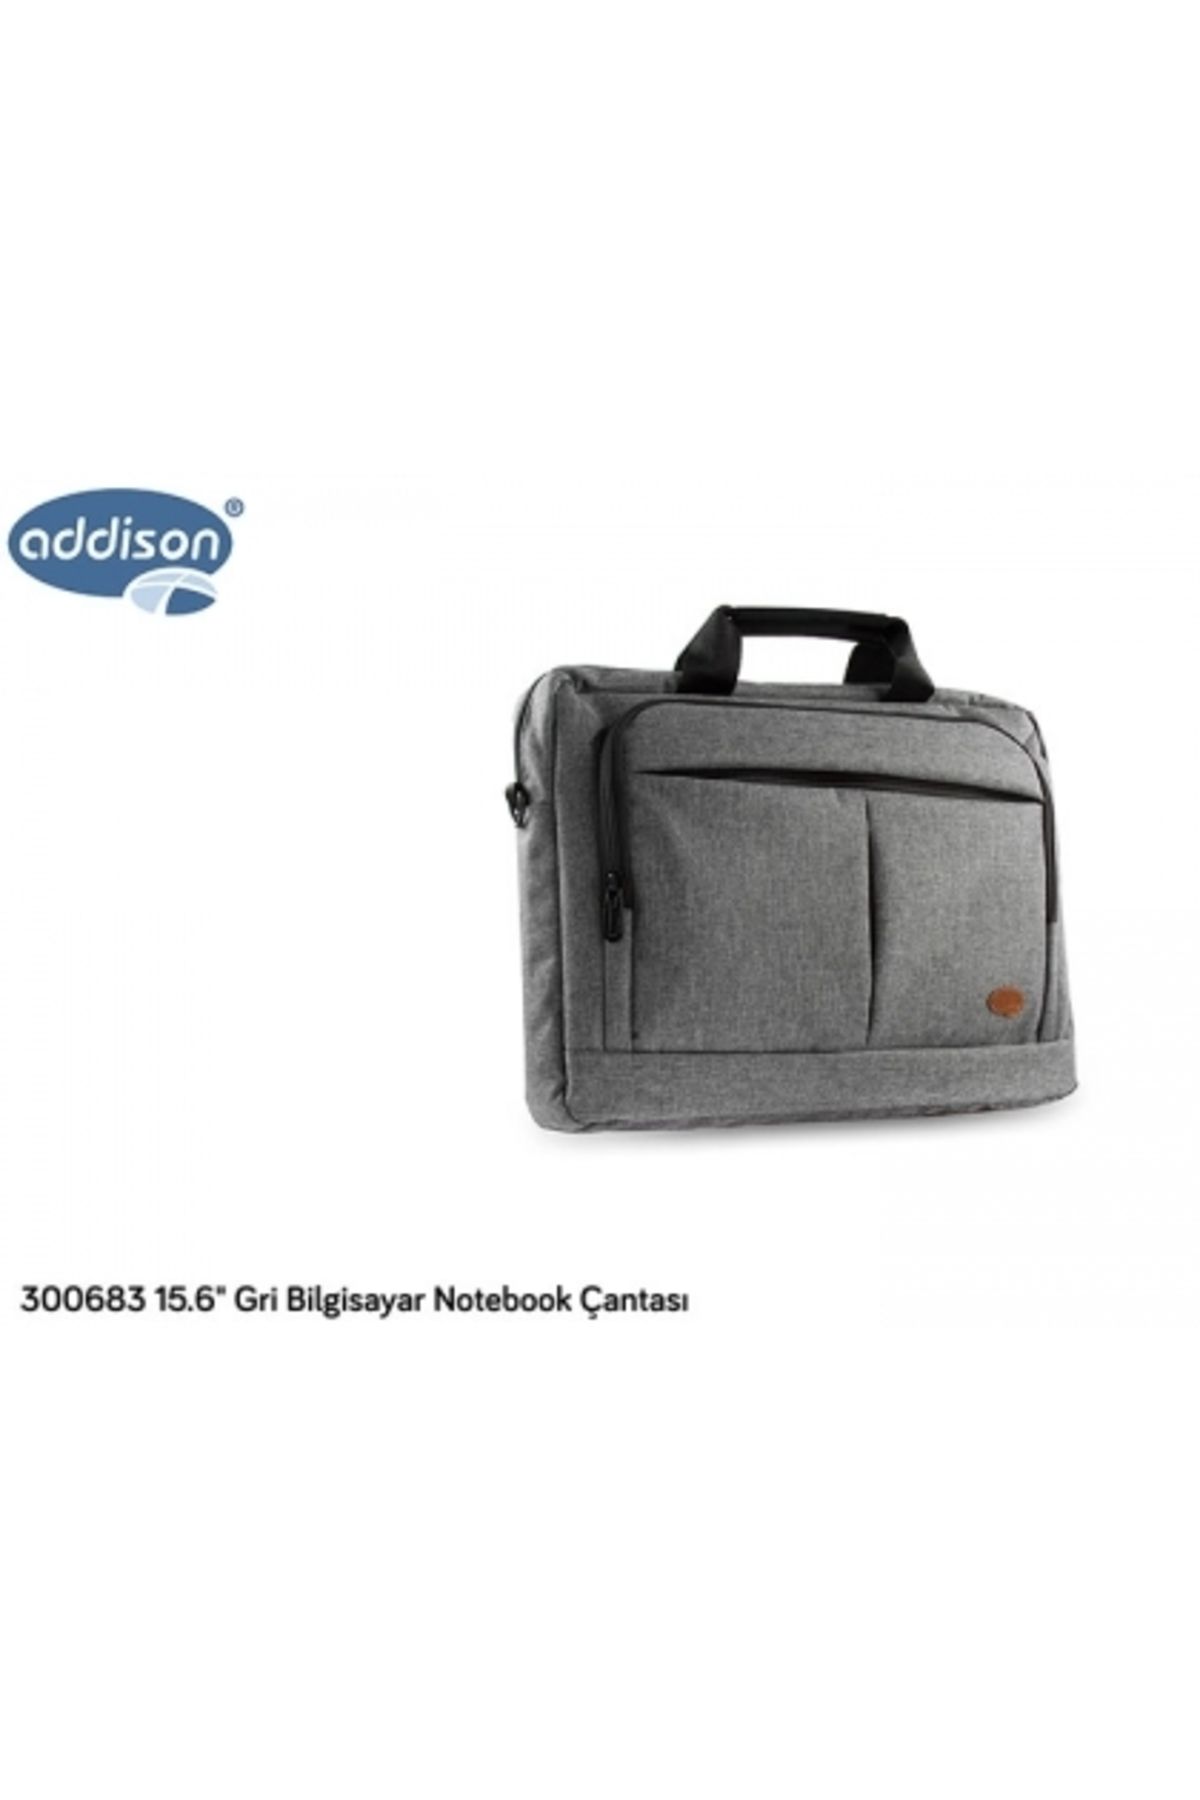 Addison 300683 15.6 Gri Bilgisayar Notebook Çantası